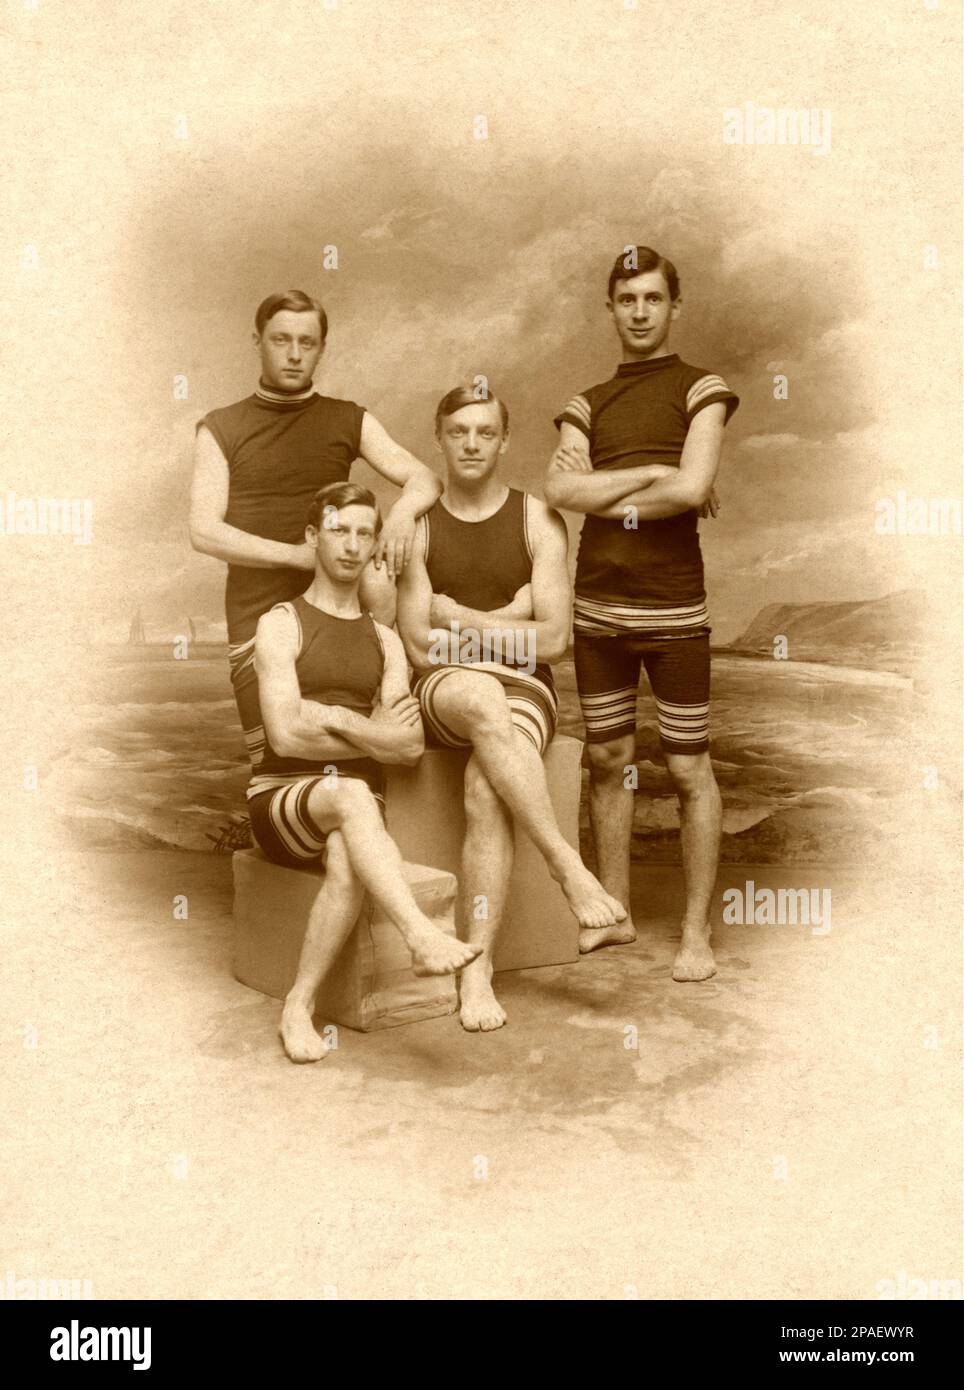 1906 , Atlantic City , New Jersey , USA  : Four friends at beach . Photo by Harry Phillips , Atlantic City  -  COSTUME DA BAGNO - SWIMSUIT - FOTO STORICHE - HISTORY PHOTOS -   - AMICO - AMICI - CAPPELLO - FASHION - MODA  - XX CENTURY - NOVECENTO - spiaggia - mare - sea - turisti - tourist - turismo - tourism - giovanotto - giovanotti - young man - men  - uomo - uomini - gambe - legs   ----      ARCHIVIO GBB Stock Photo